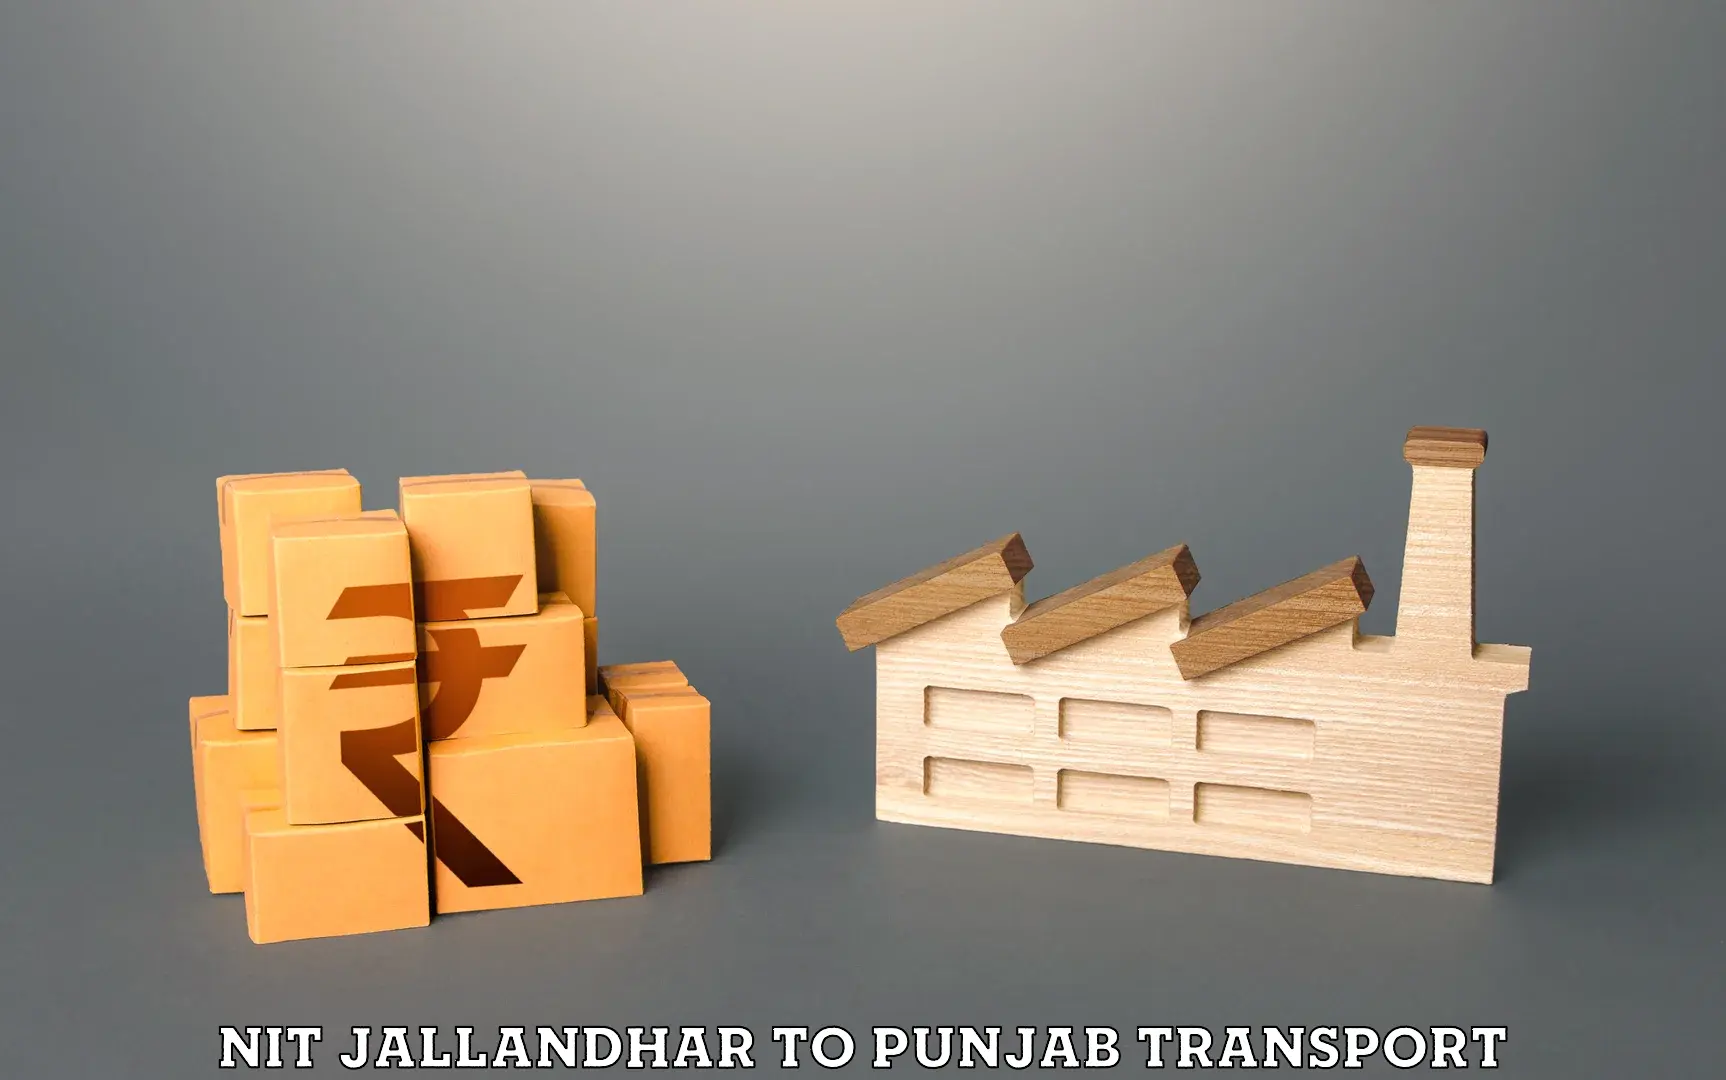 Online transport service NIT Jallandhar to Batala